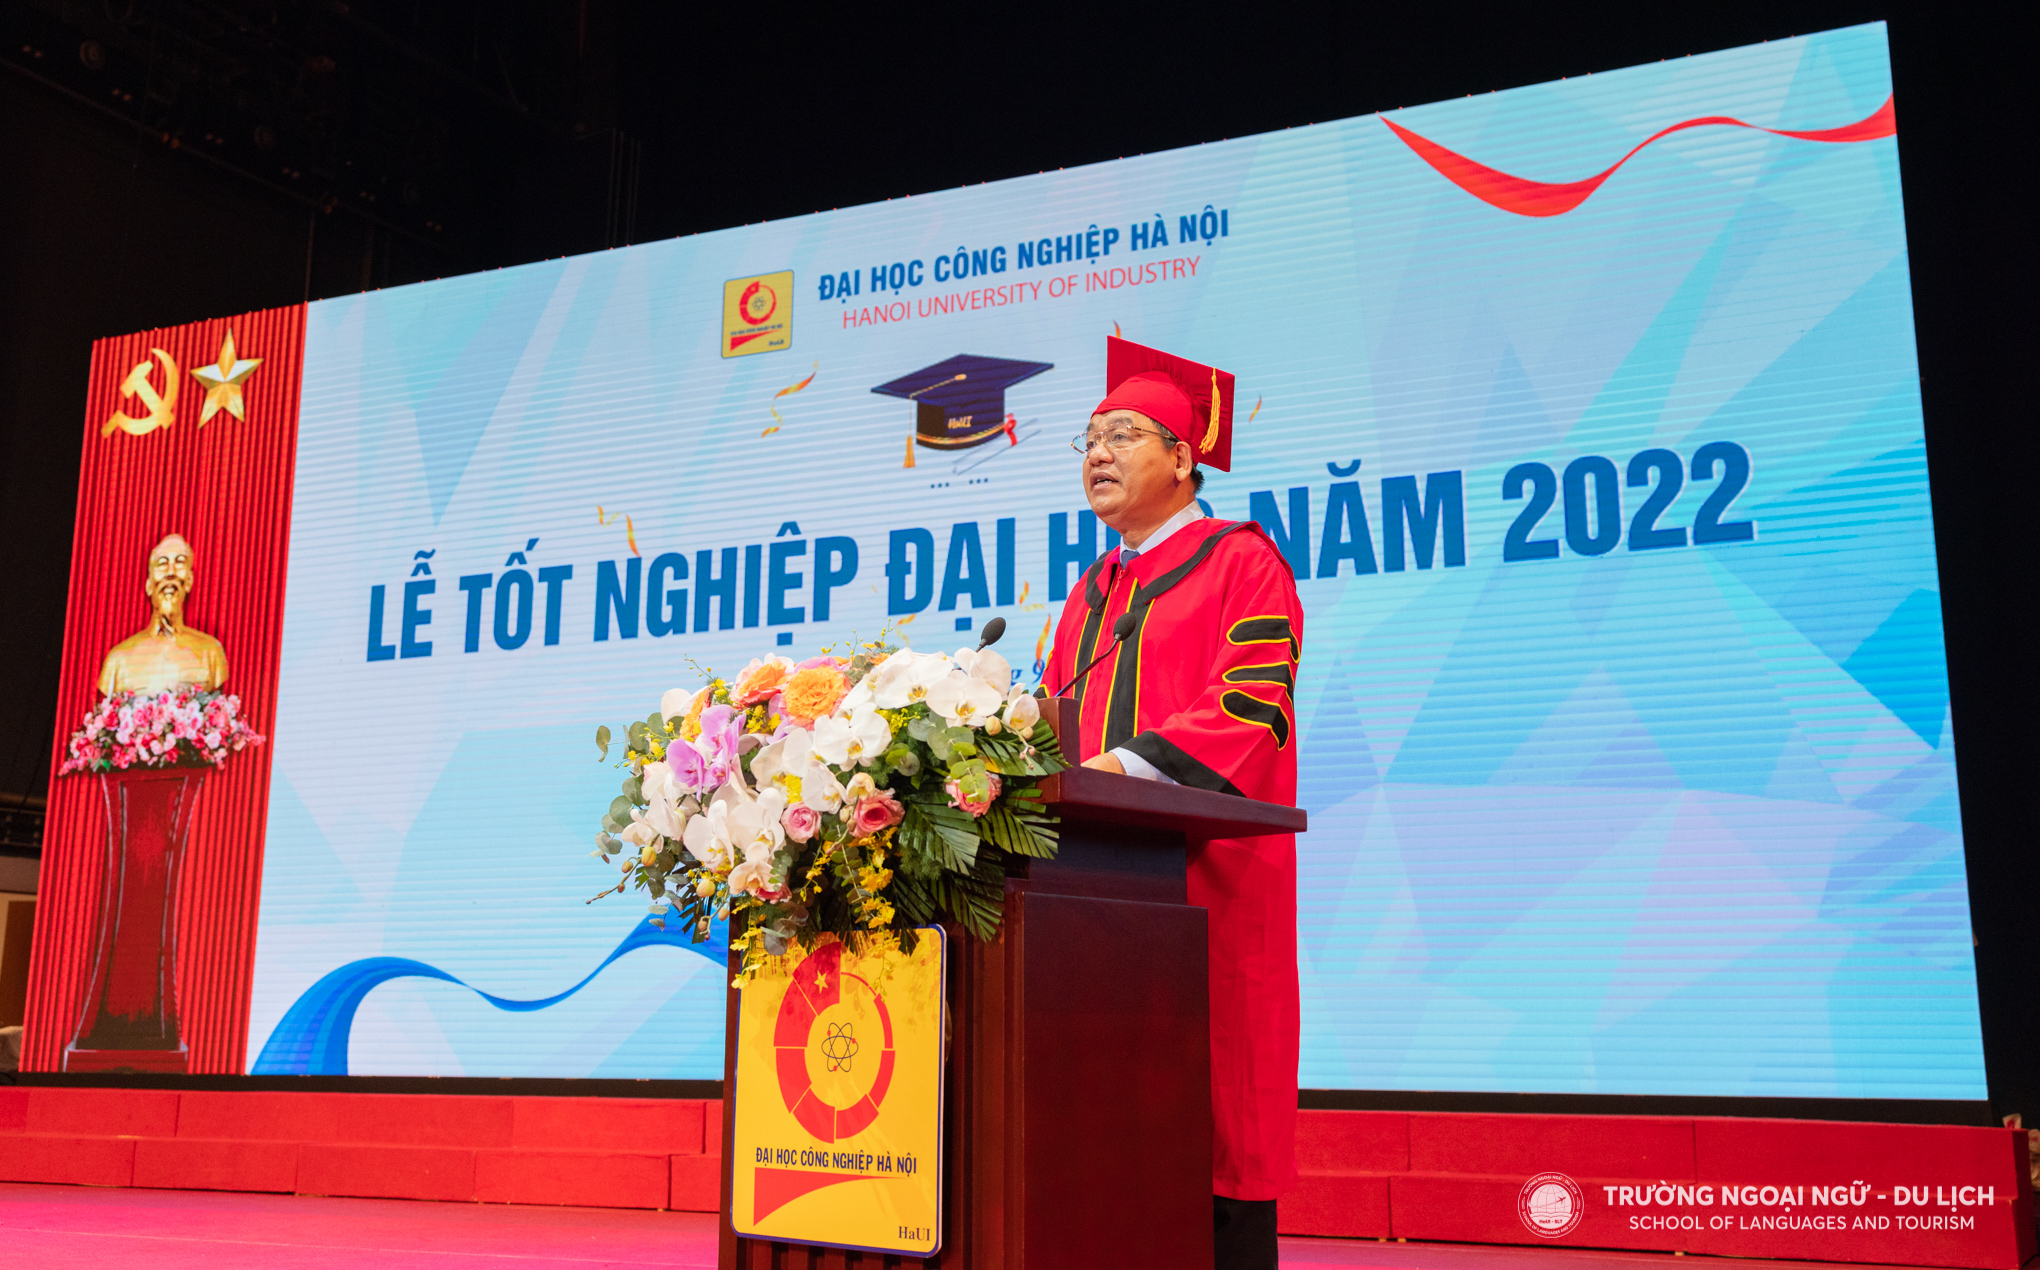 Tân cử nhân Trường Ngoại ngữ - Du lịch rạng rỡ trong buổi Lễ tốt nghiệp đại học năm 2022